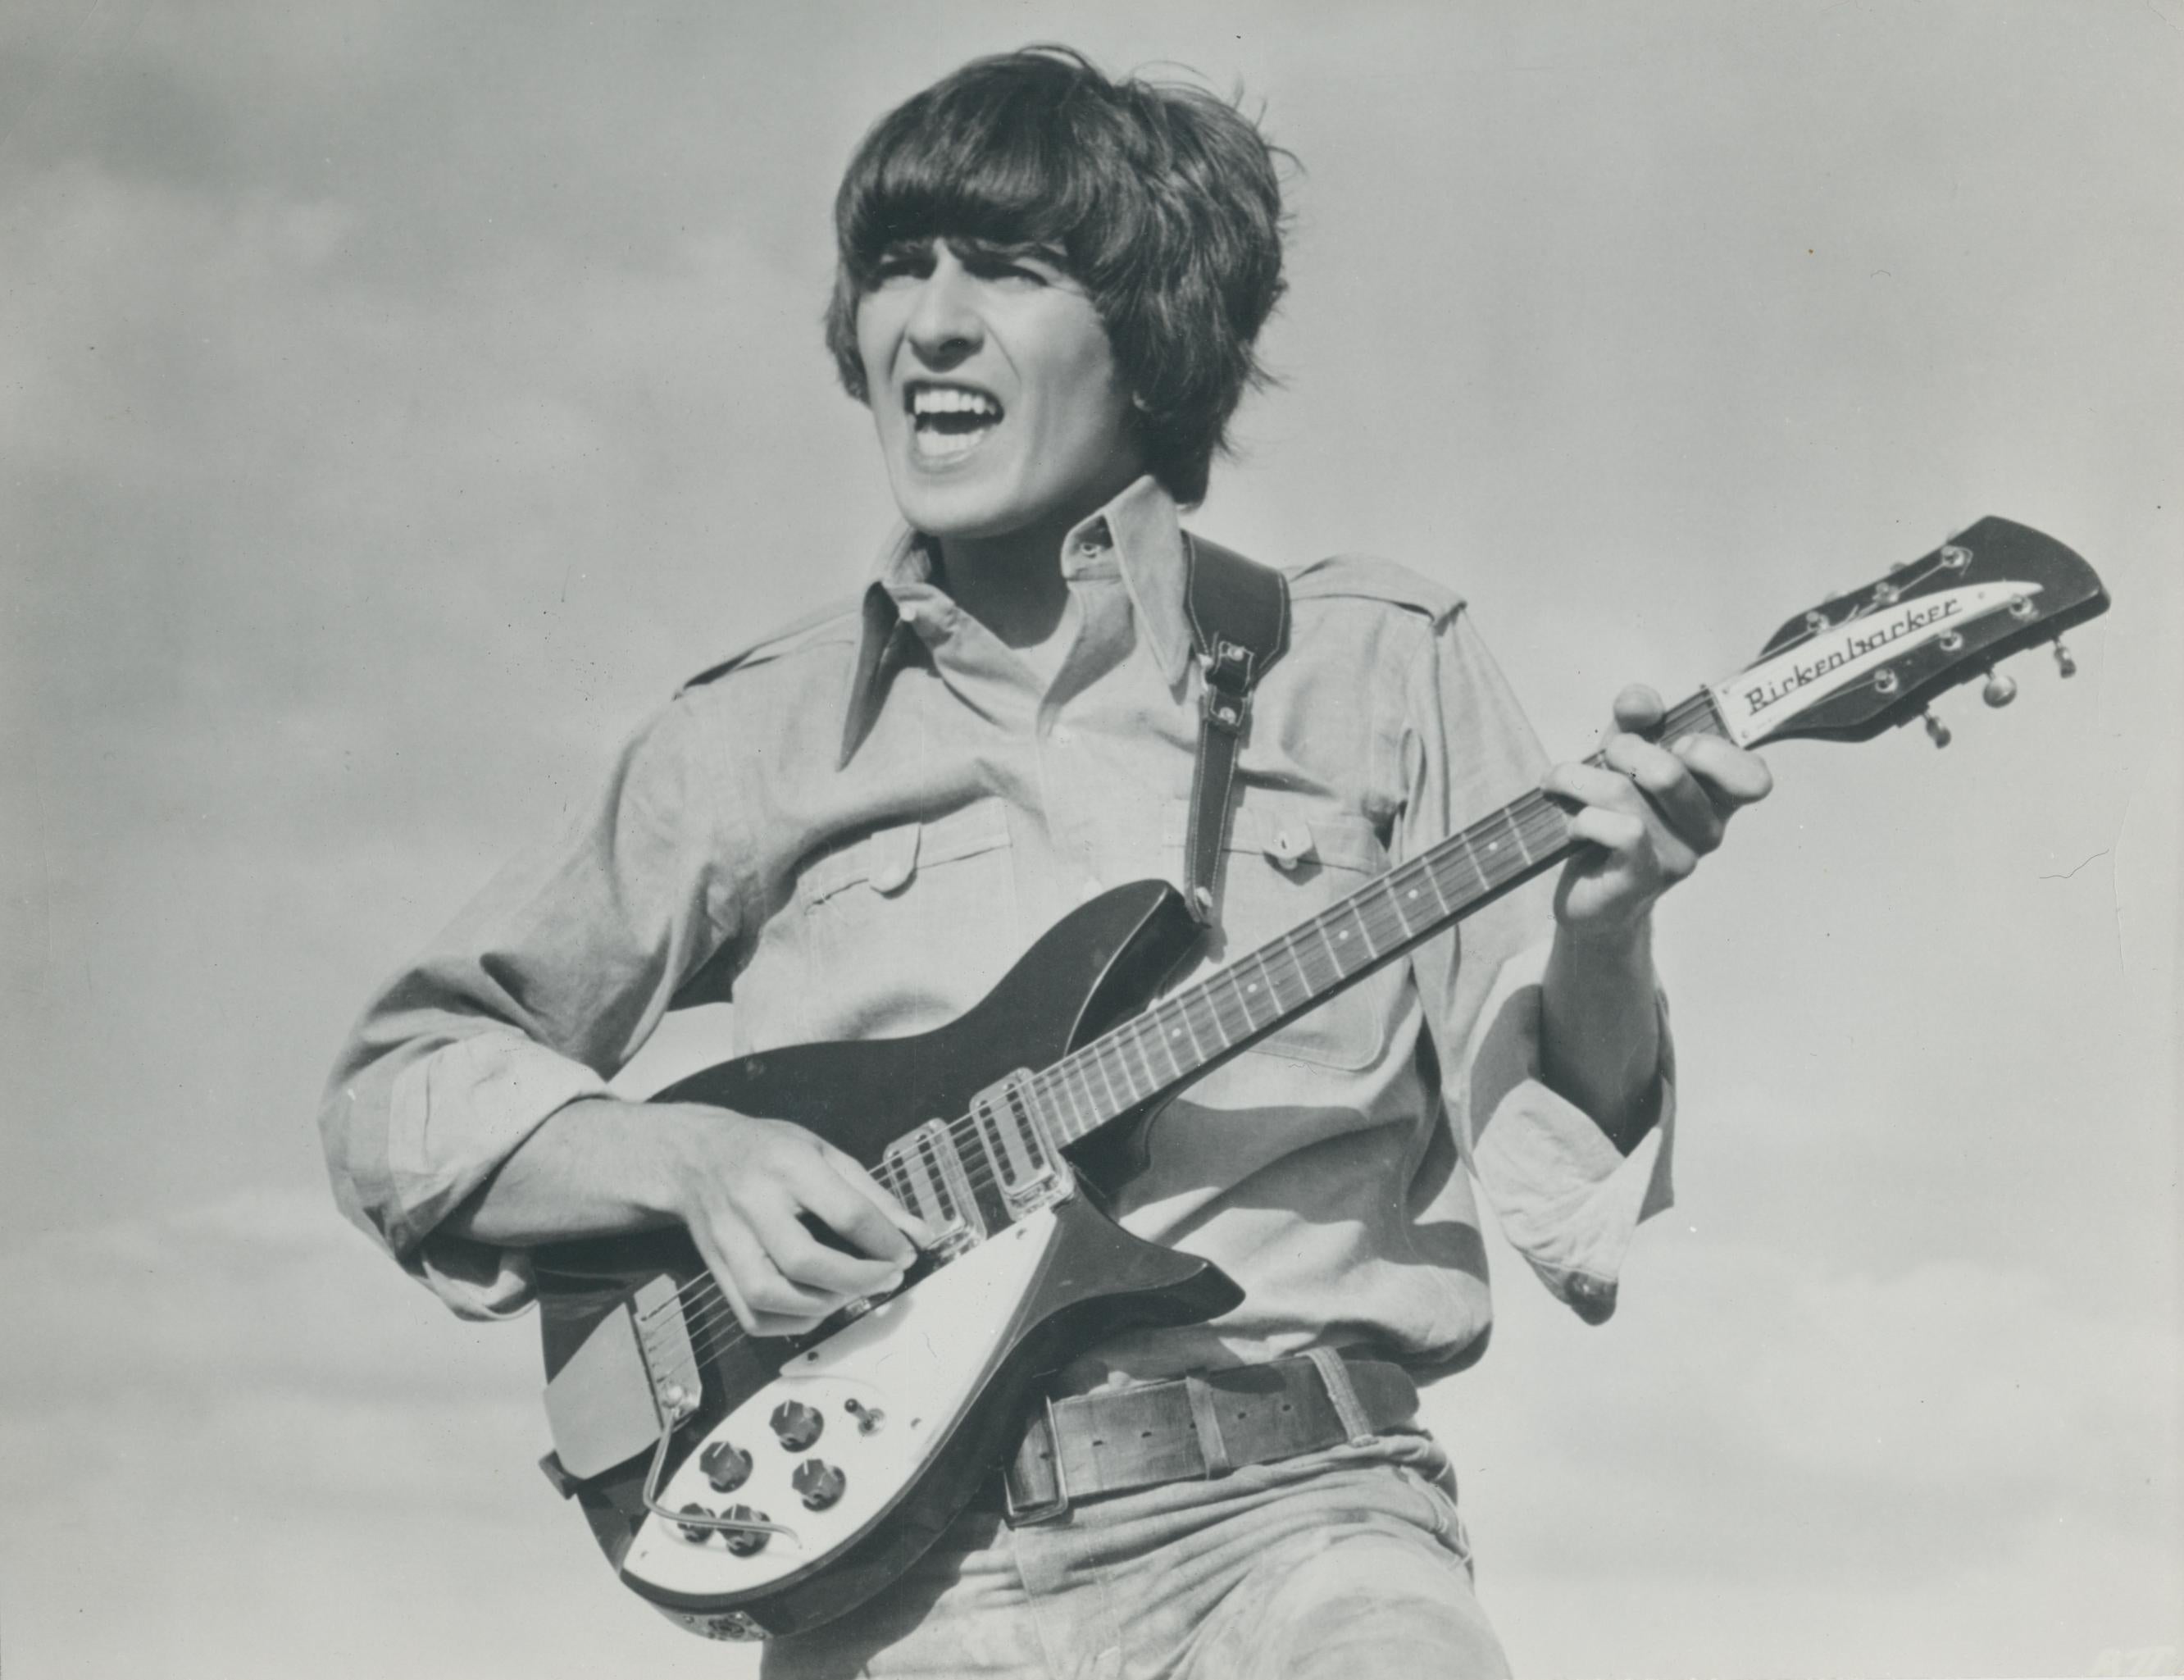 Martin Weaver Portrait Photograph – George Harrison, Gitarre, Schwarz-Weiß-Fotografie, ca. 1970er Jahre, 17,2 x 22,8 cm